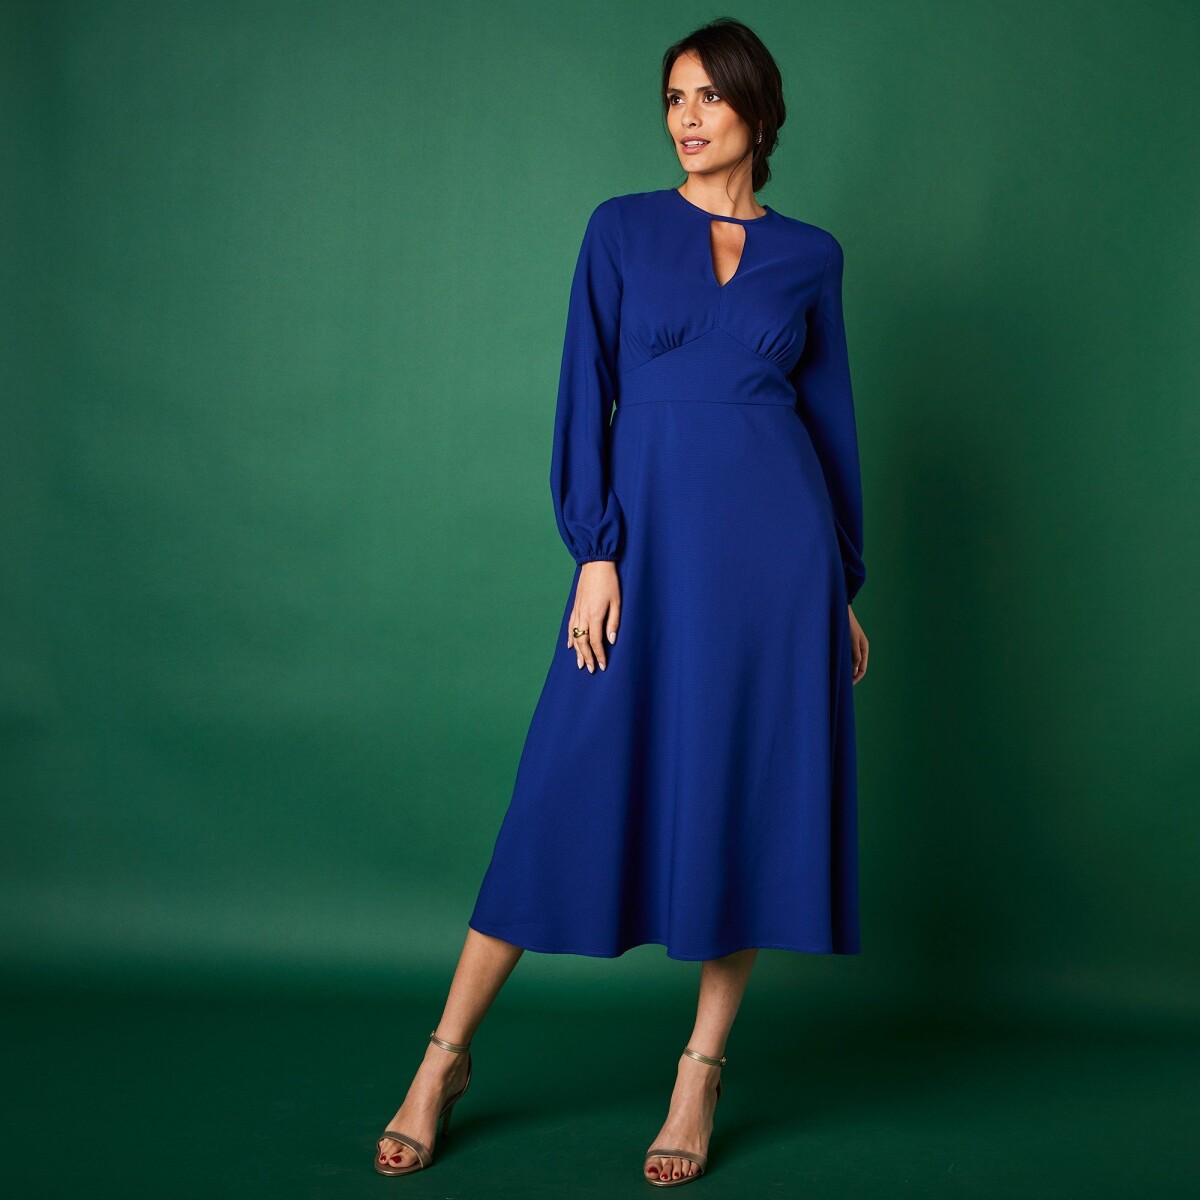 Blancheporte Polodlouhé jednobarevné šaty tmavě modrá 36